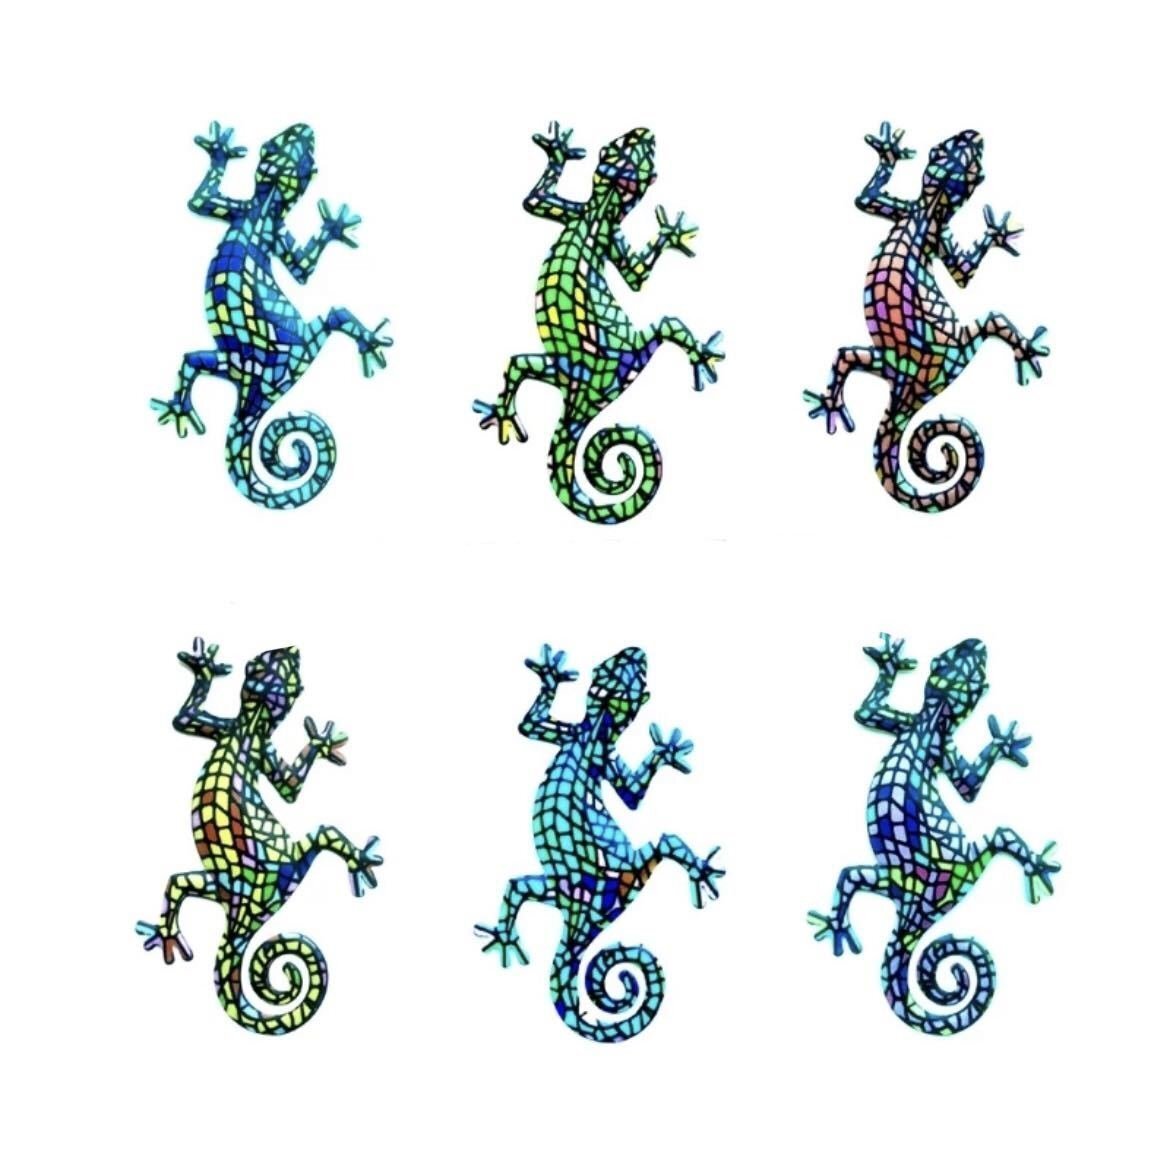 LHH782★6 colores disponibles Decoraciones de pared Lagartos Tritones Geckos Tapices de pared Papel tapiz 3D Accesorios artísticos lindos y elegantes Arte colgante interior, Artículos hechos a mano, interior, bienes varios, almohadón